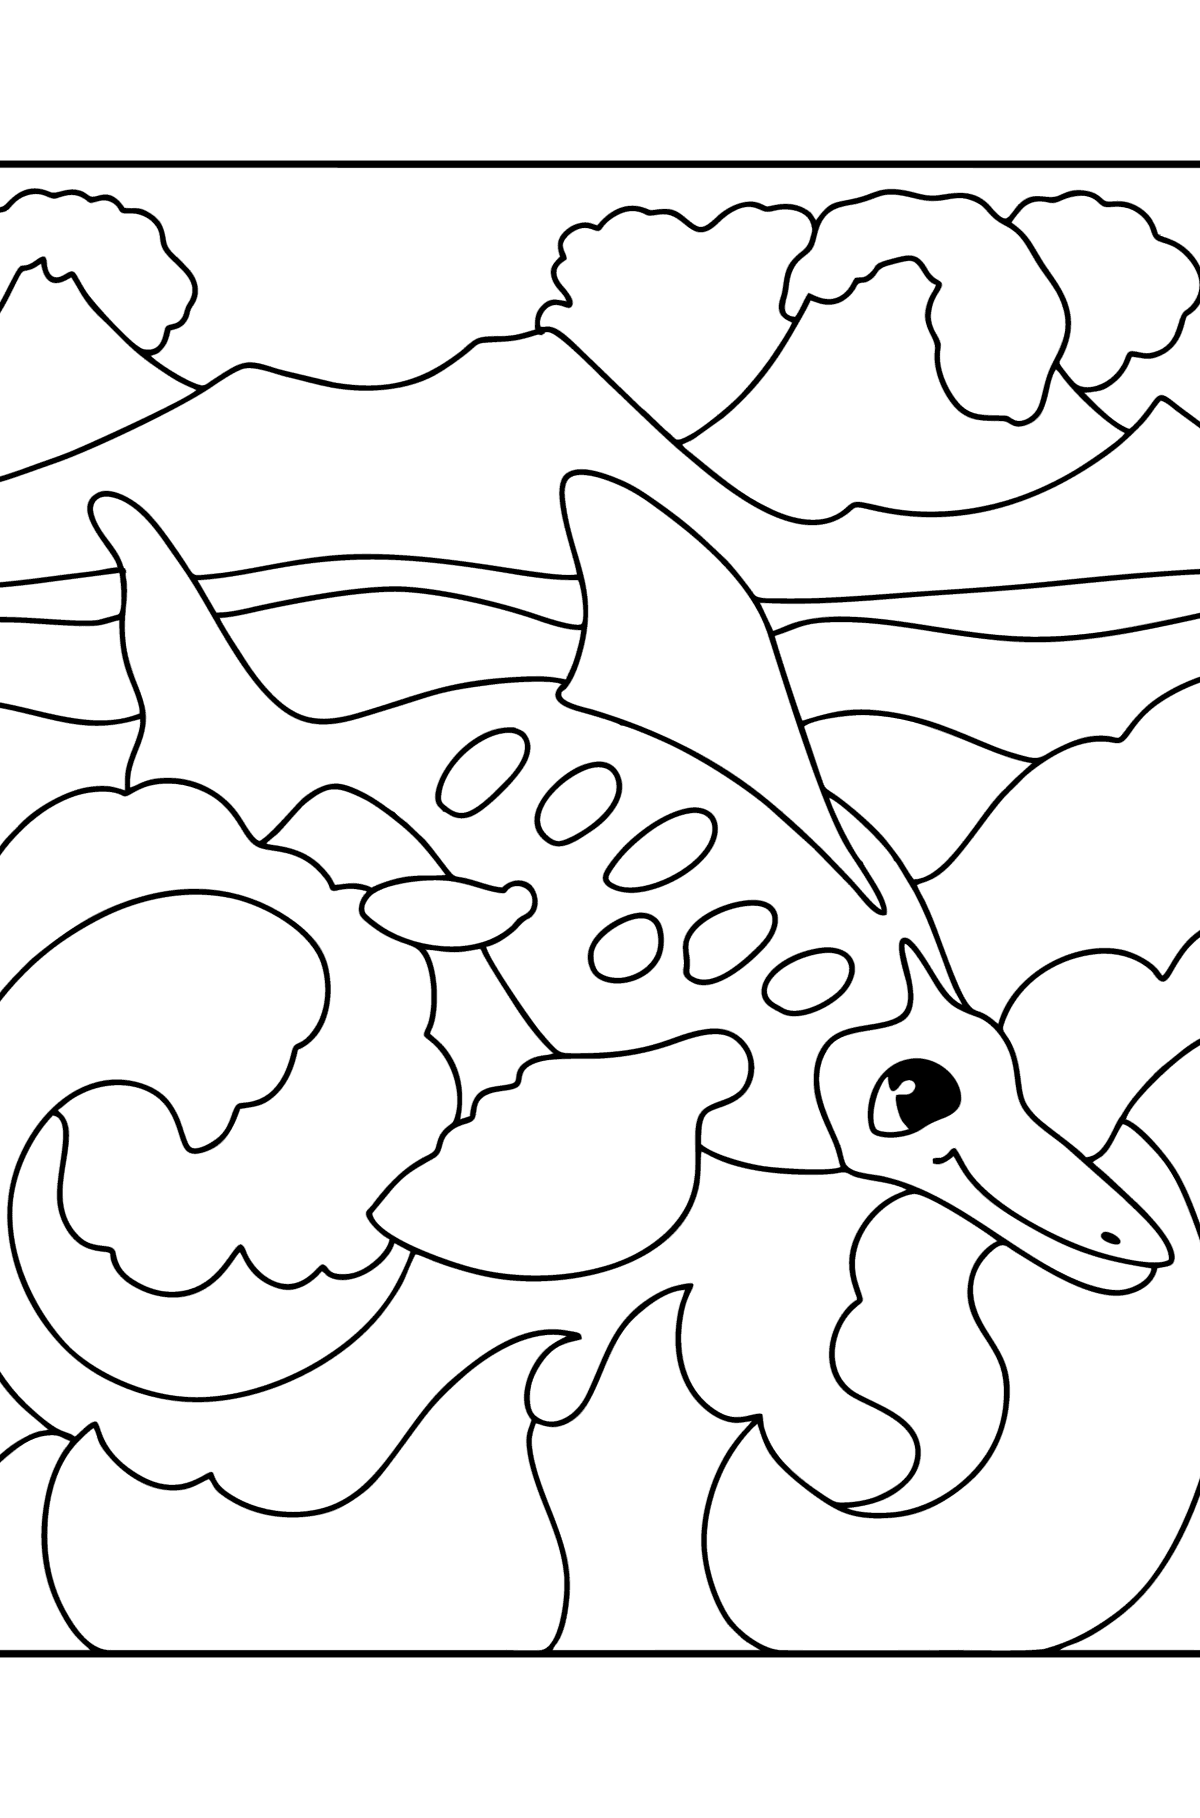 Målarbild ichthyosaurus - Målarbilder För barn